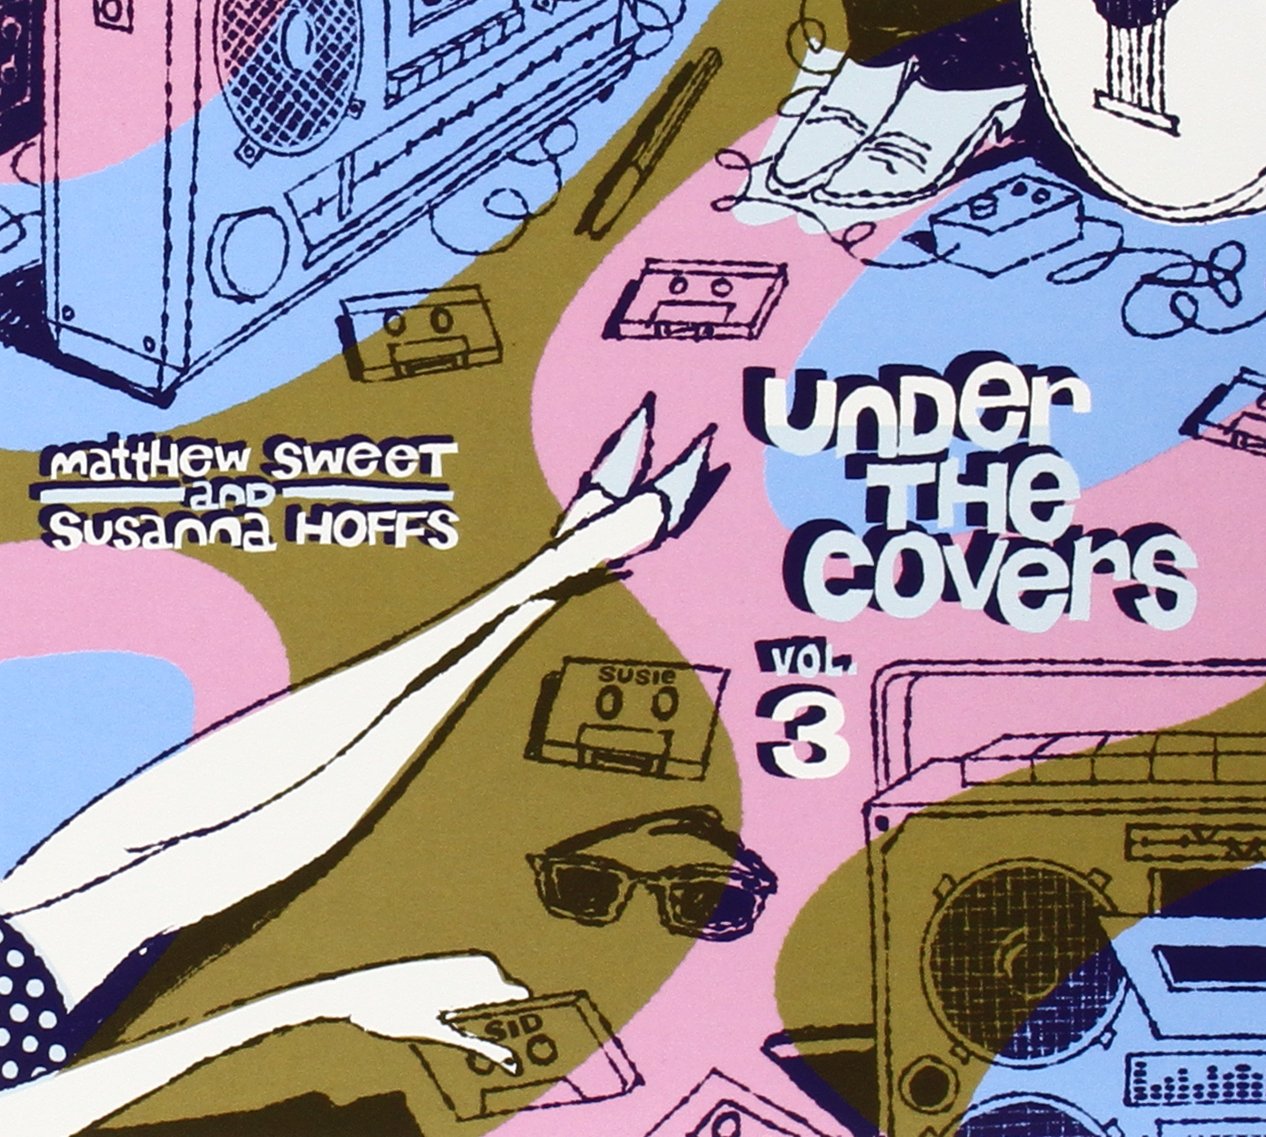 Matthew Sweet & Susanna Hoffs "Under the Covers, Vol. 3" LP